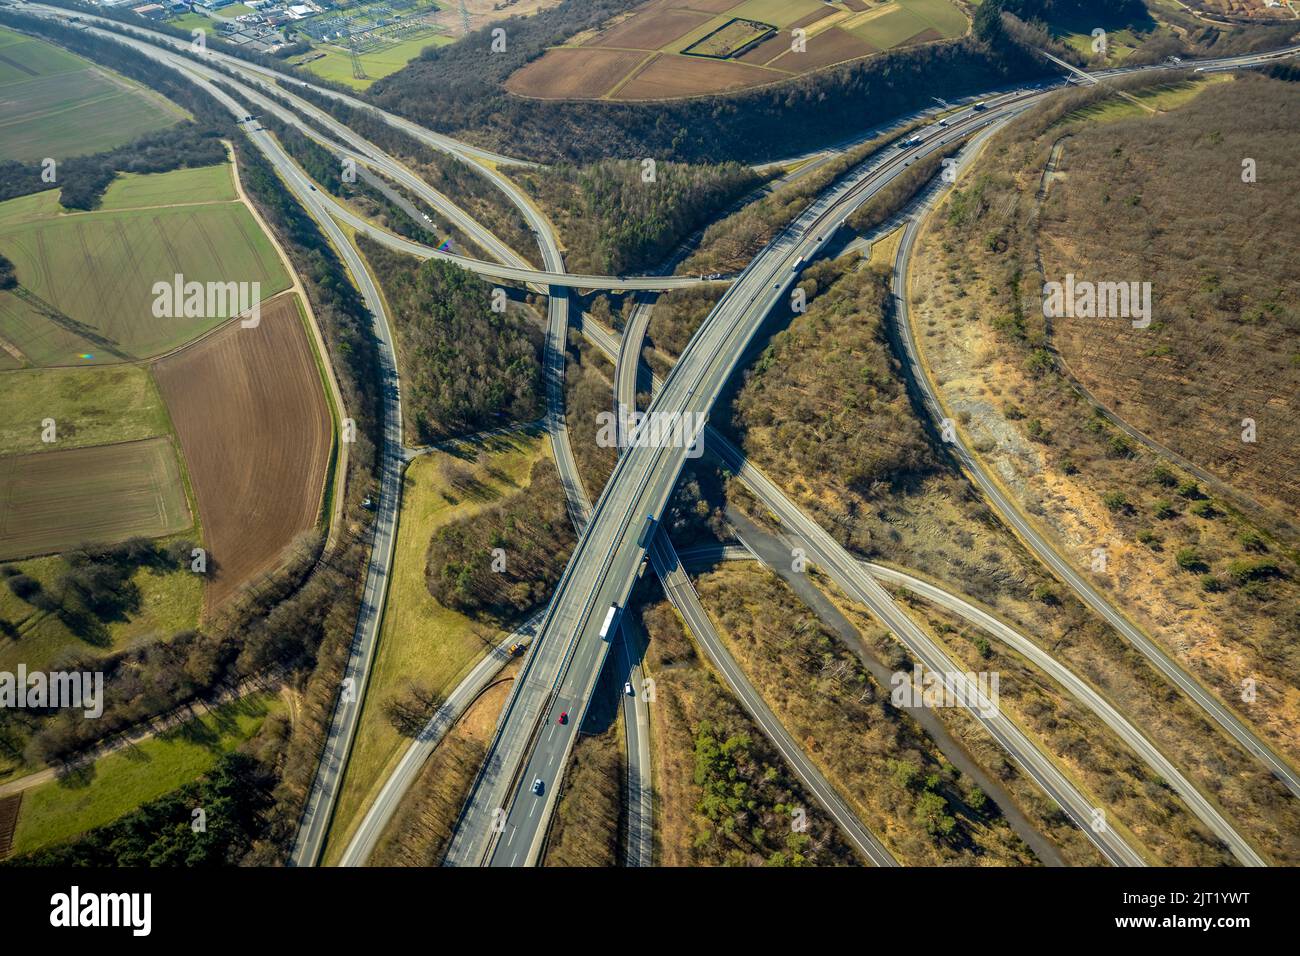 Autobahnkreuz Wetzlar, Autobahn A45 et Autobahn A480, Hermannstein, Wetzlar, Sauerland, Hesse, Allemagne, Autobahn, Autobahn A45, Autobahnbrücke, Autob Banque D'Images